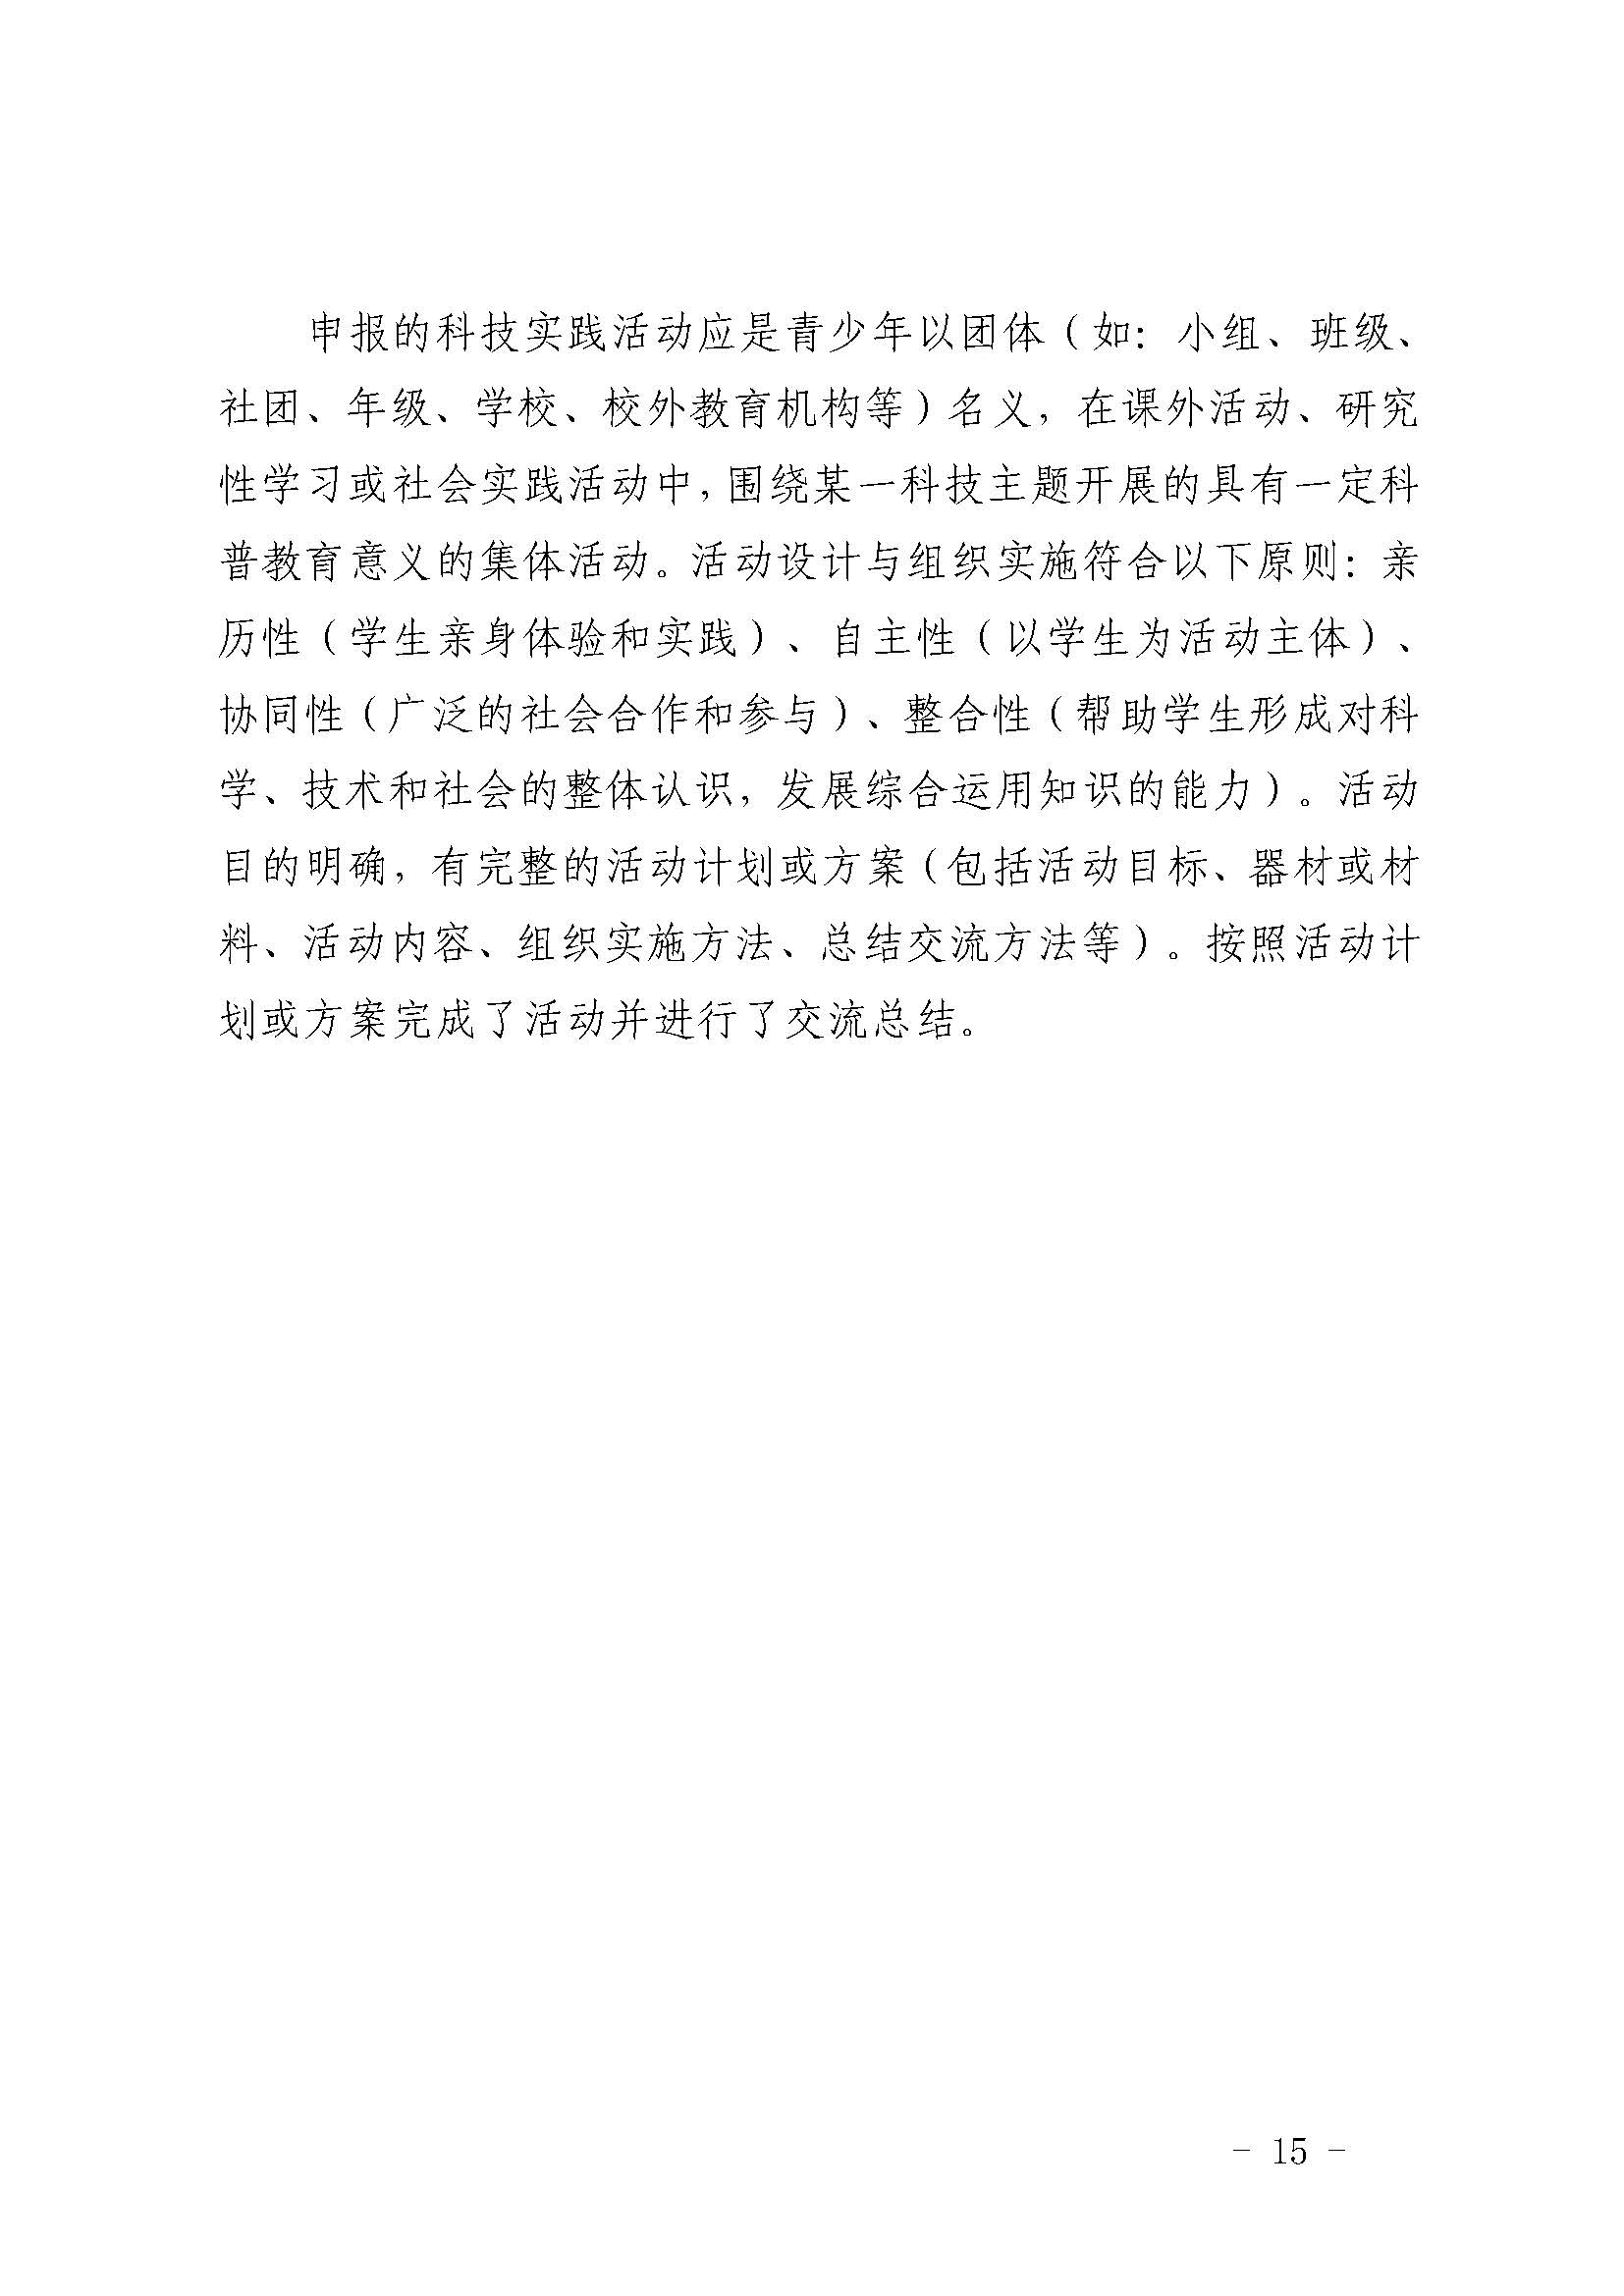 第39届上海市青少年科技创新大赛举办通知V4.3_页面_15.jpg